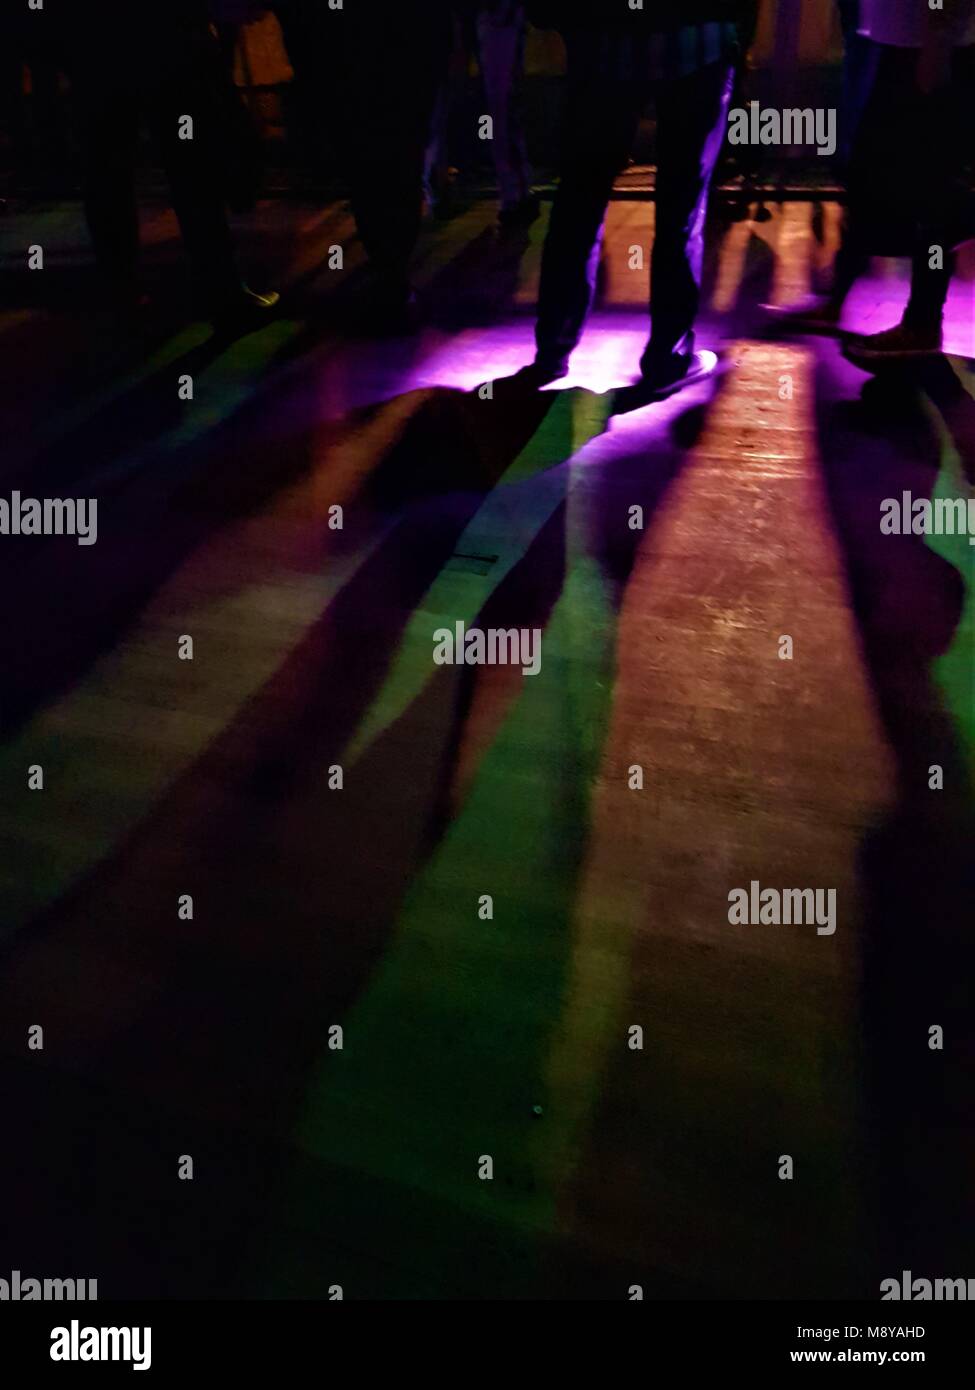 Vue faible de gens debout regardant une bande à un concert avec stage lights décisions modèles silhouette sur plancher en bois Banque D'Images